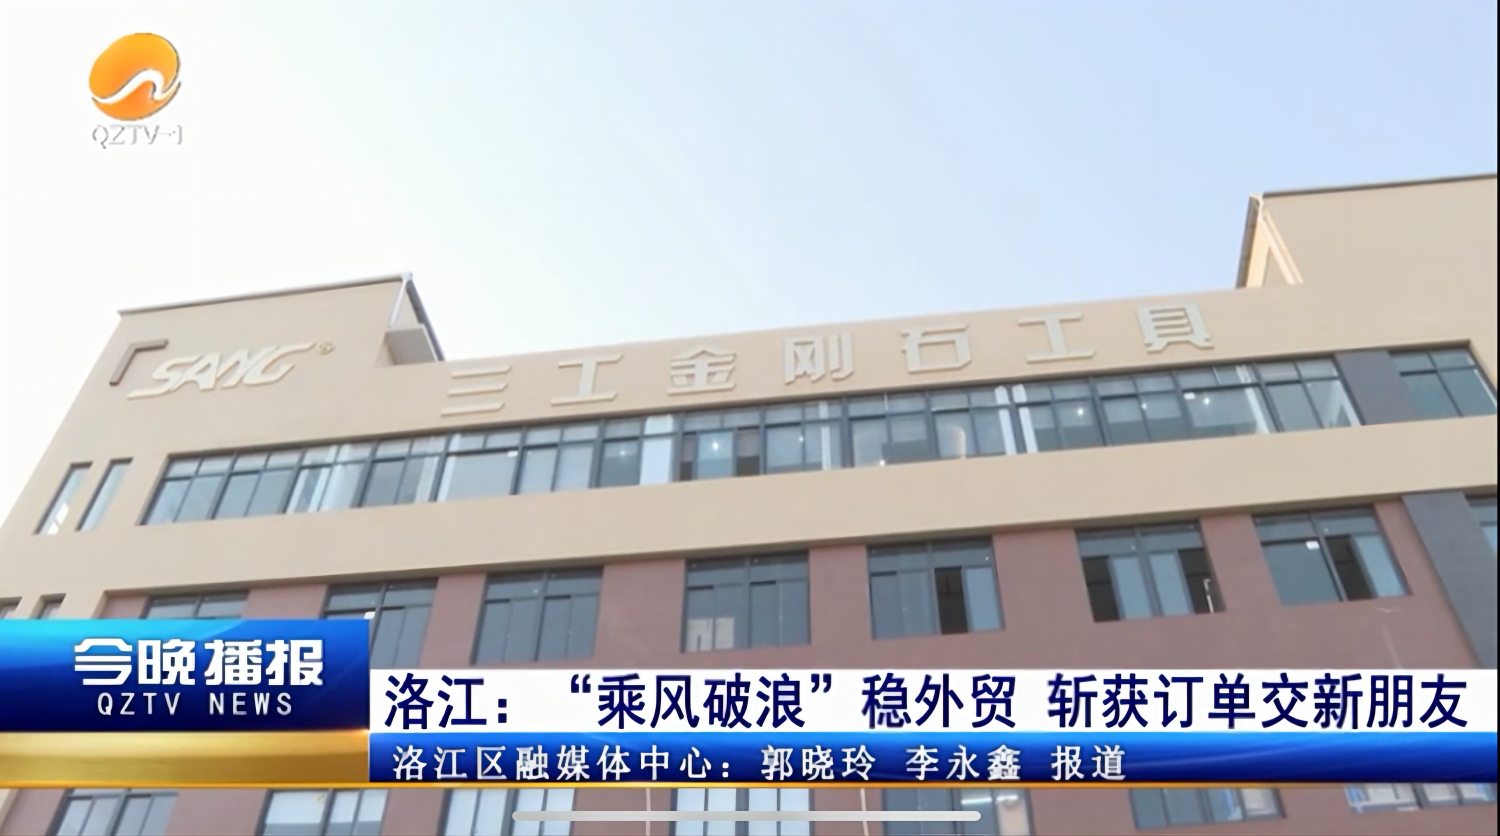 تم الإبلاغ عن Quanzhou Sang Diamond Tools بواسطة The People's Daily و QZTV